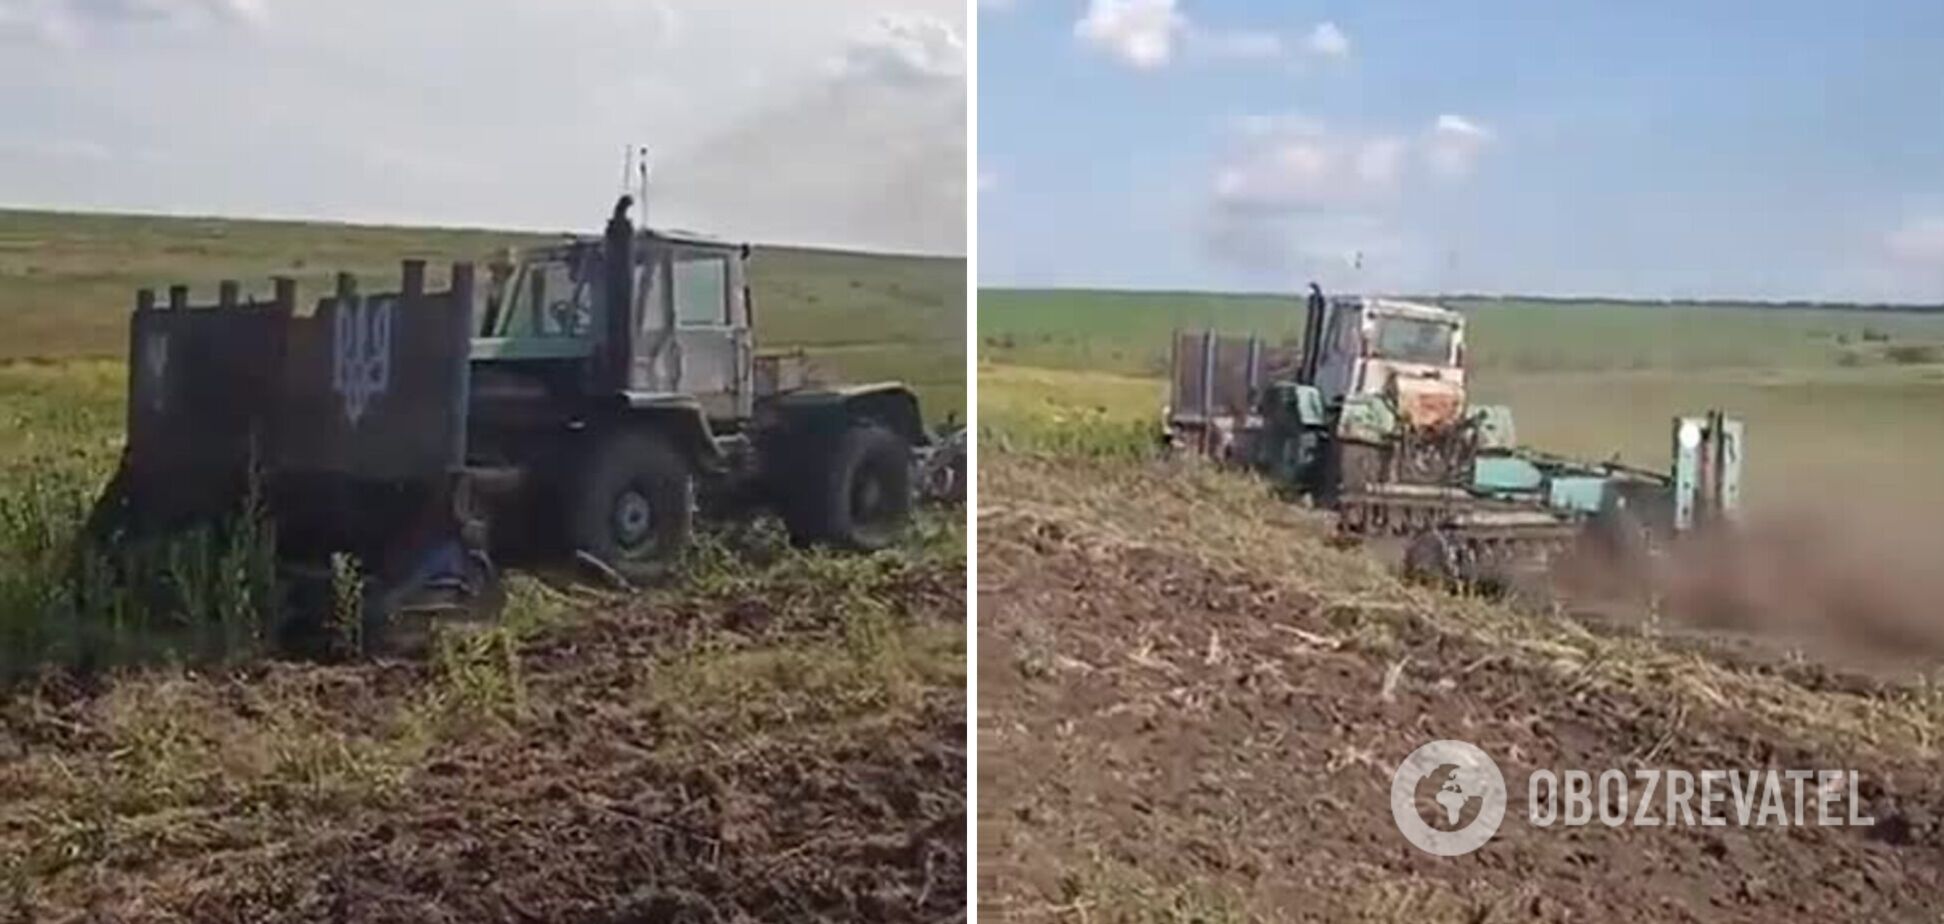 Изобретательность и трудолюбие на высоком уровне: украинский фермер принялся самостоятельно разминировать поля. Видео